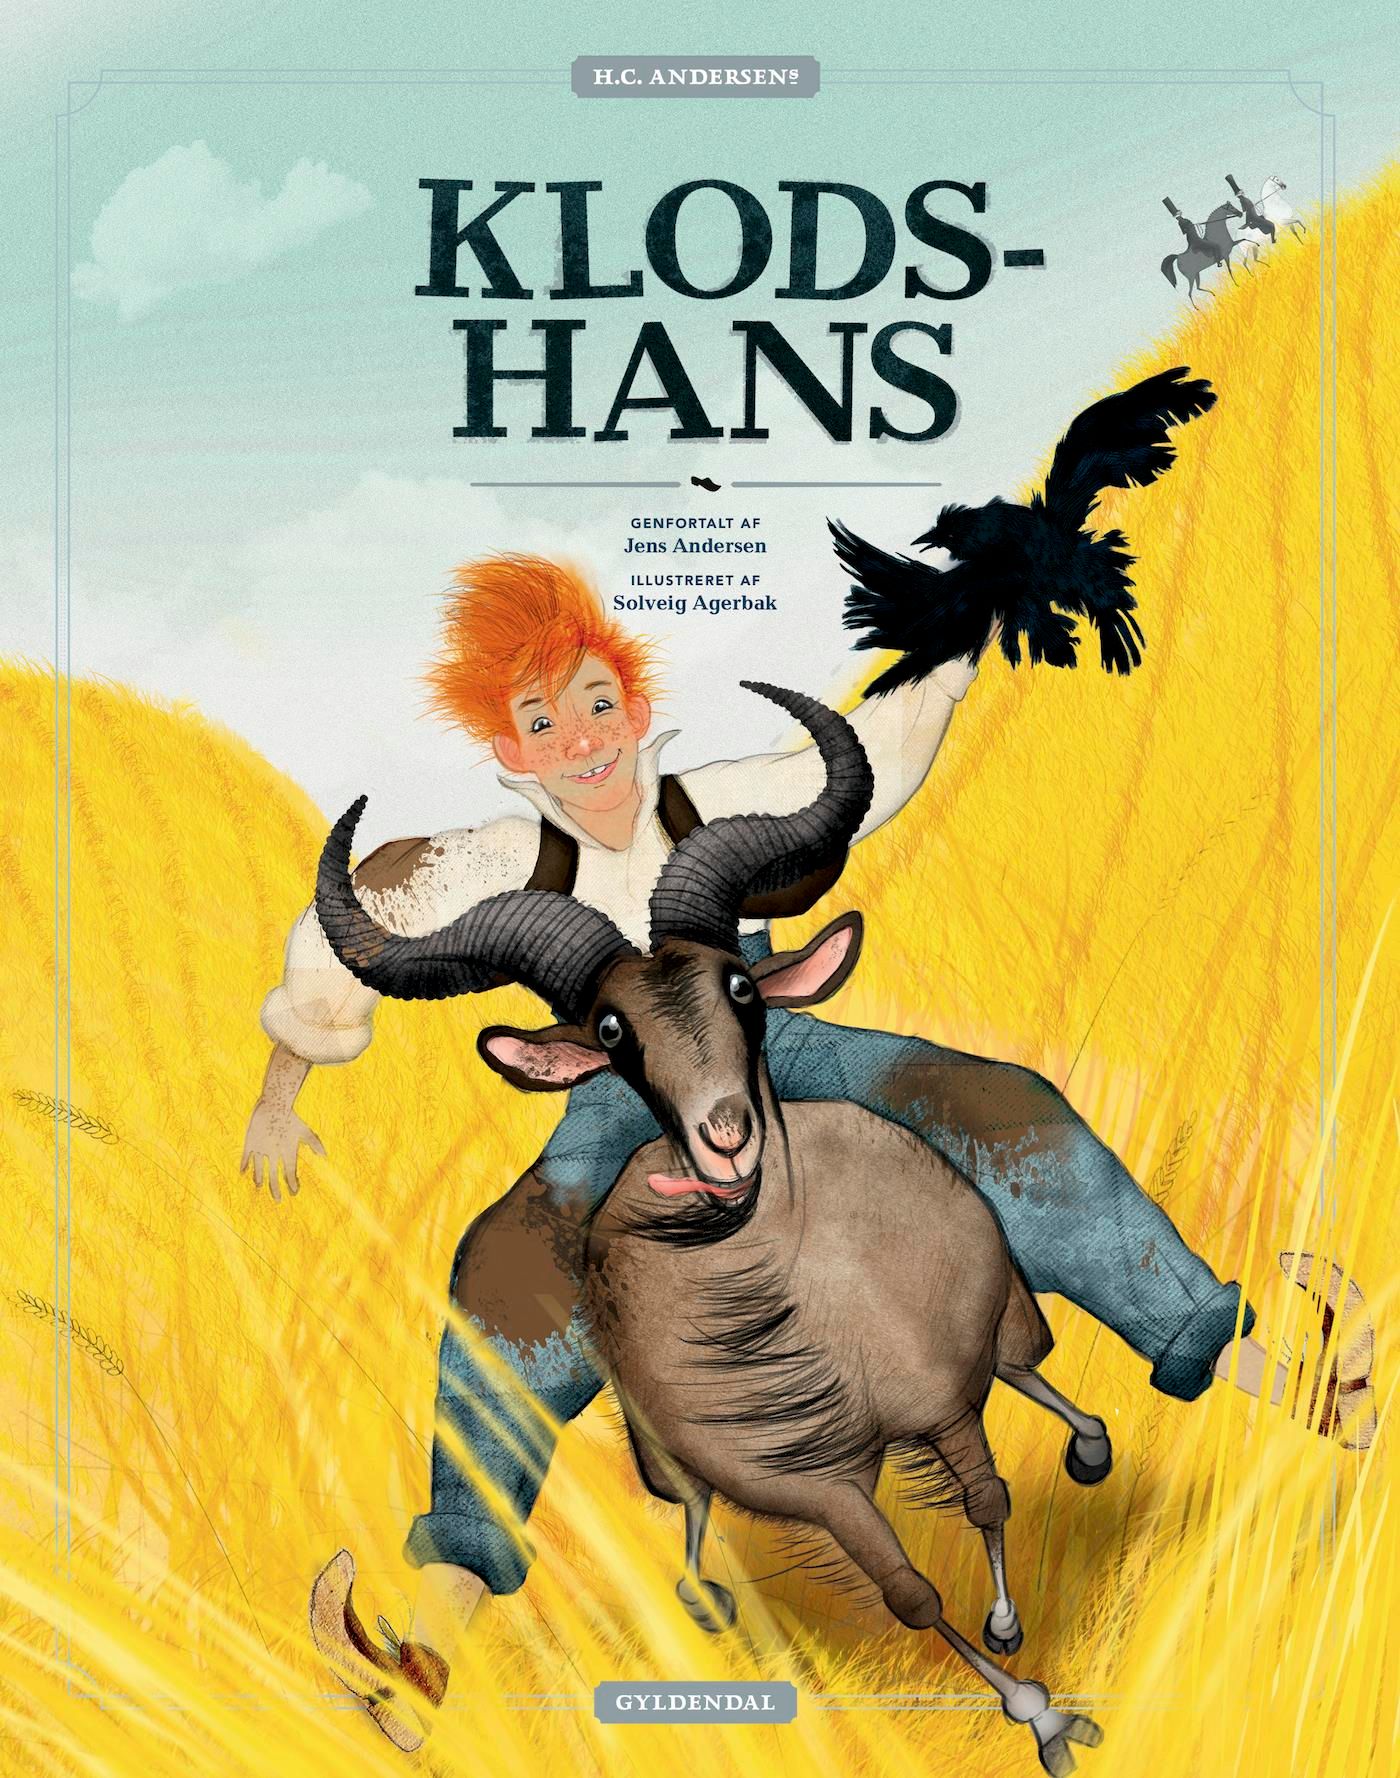 H.C. Andersens Klods-Hans - Lyt&læs, e-bok av Solveig Agerbak, Jens Andersen